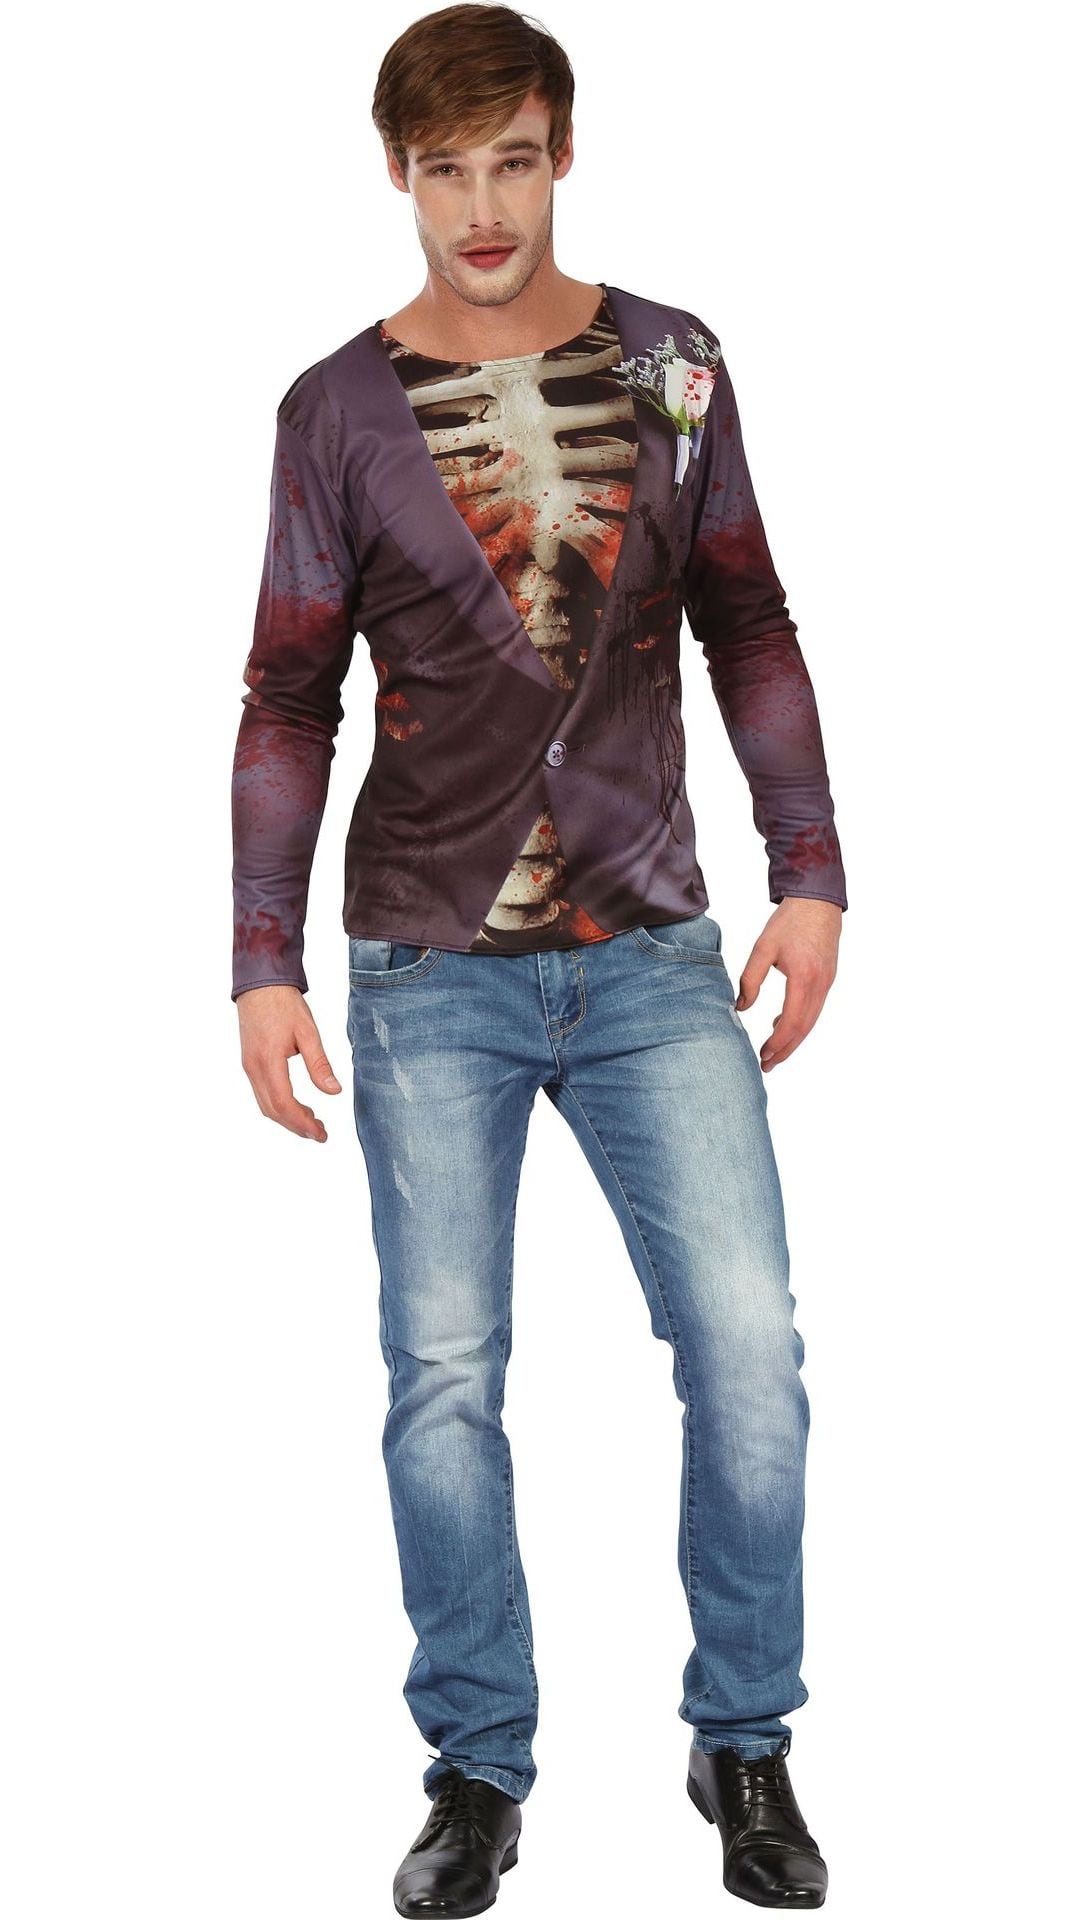 Zombie shirt